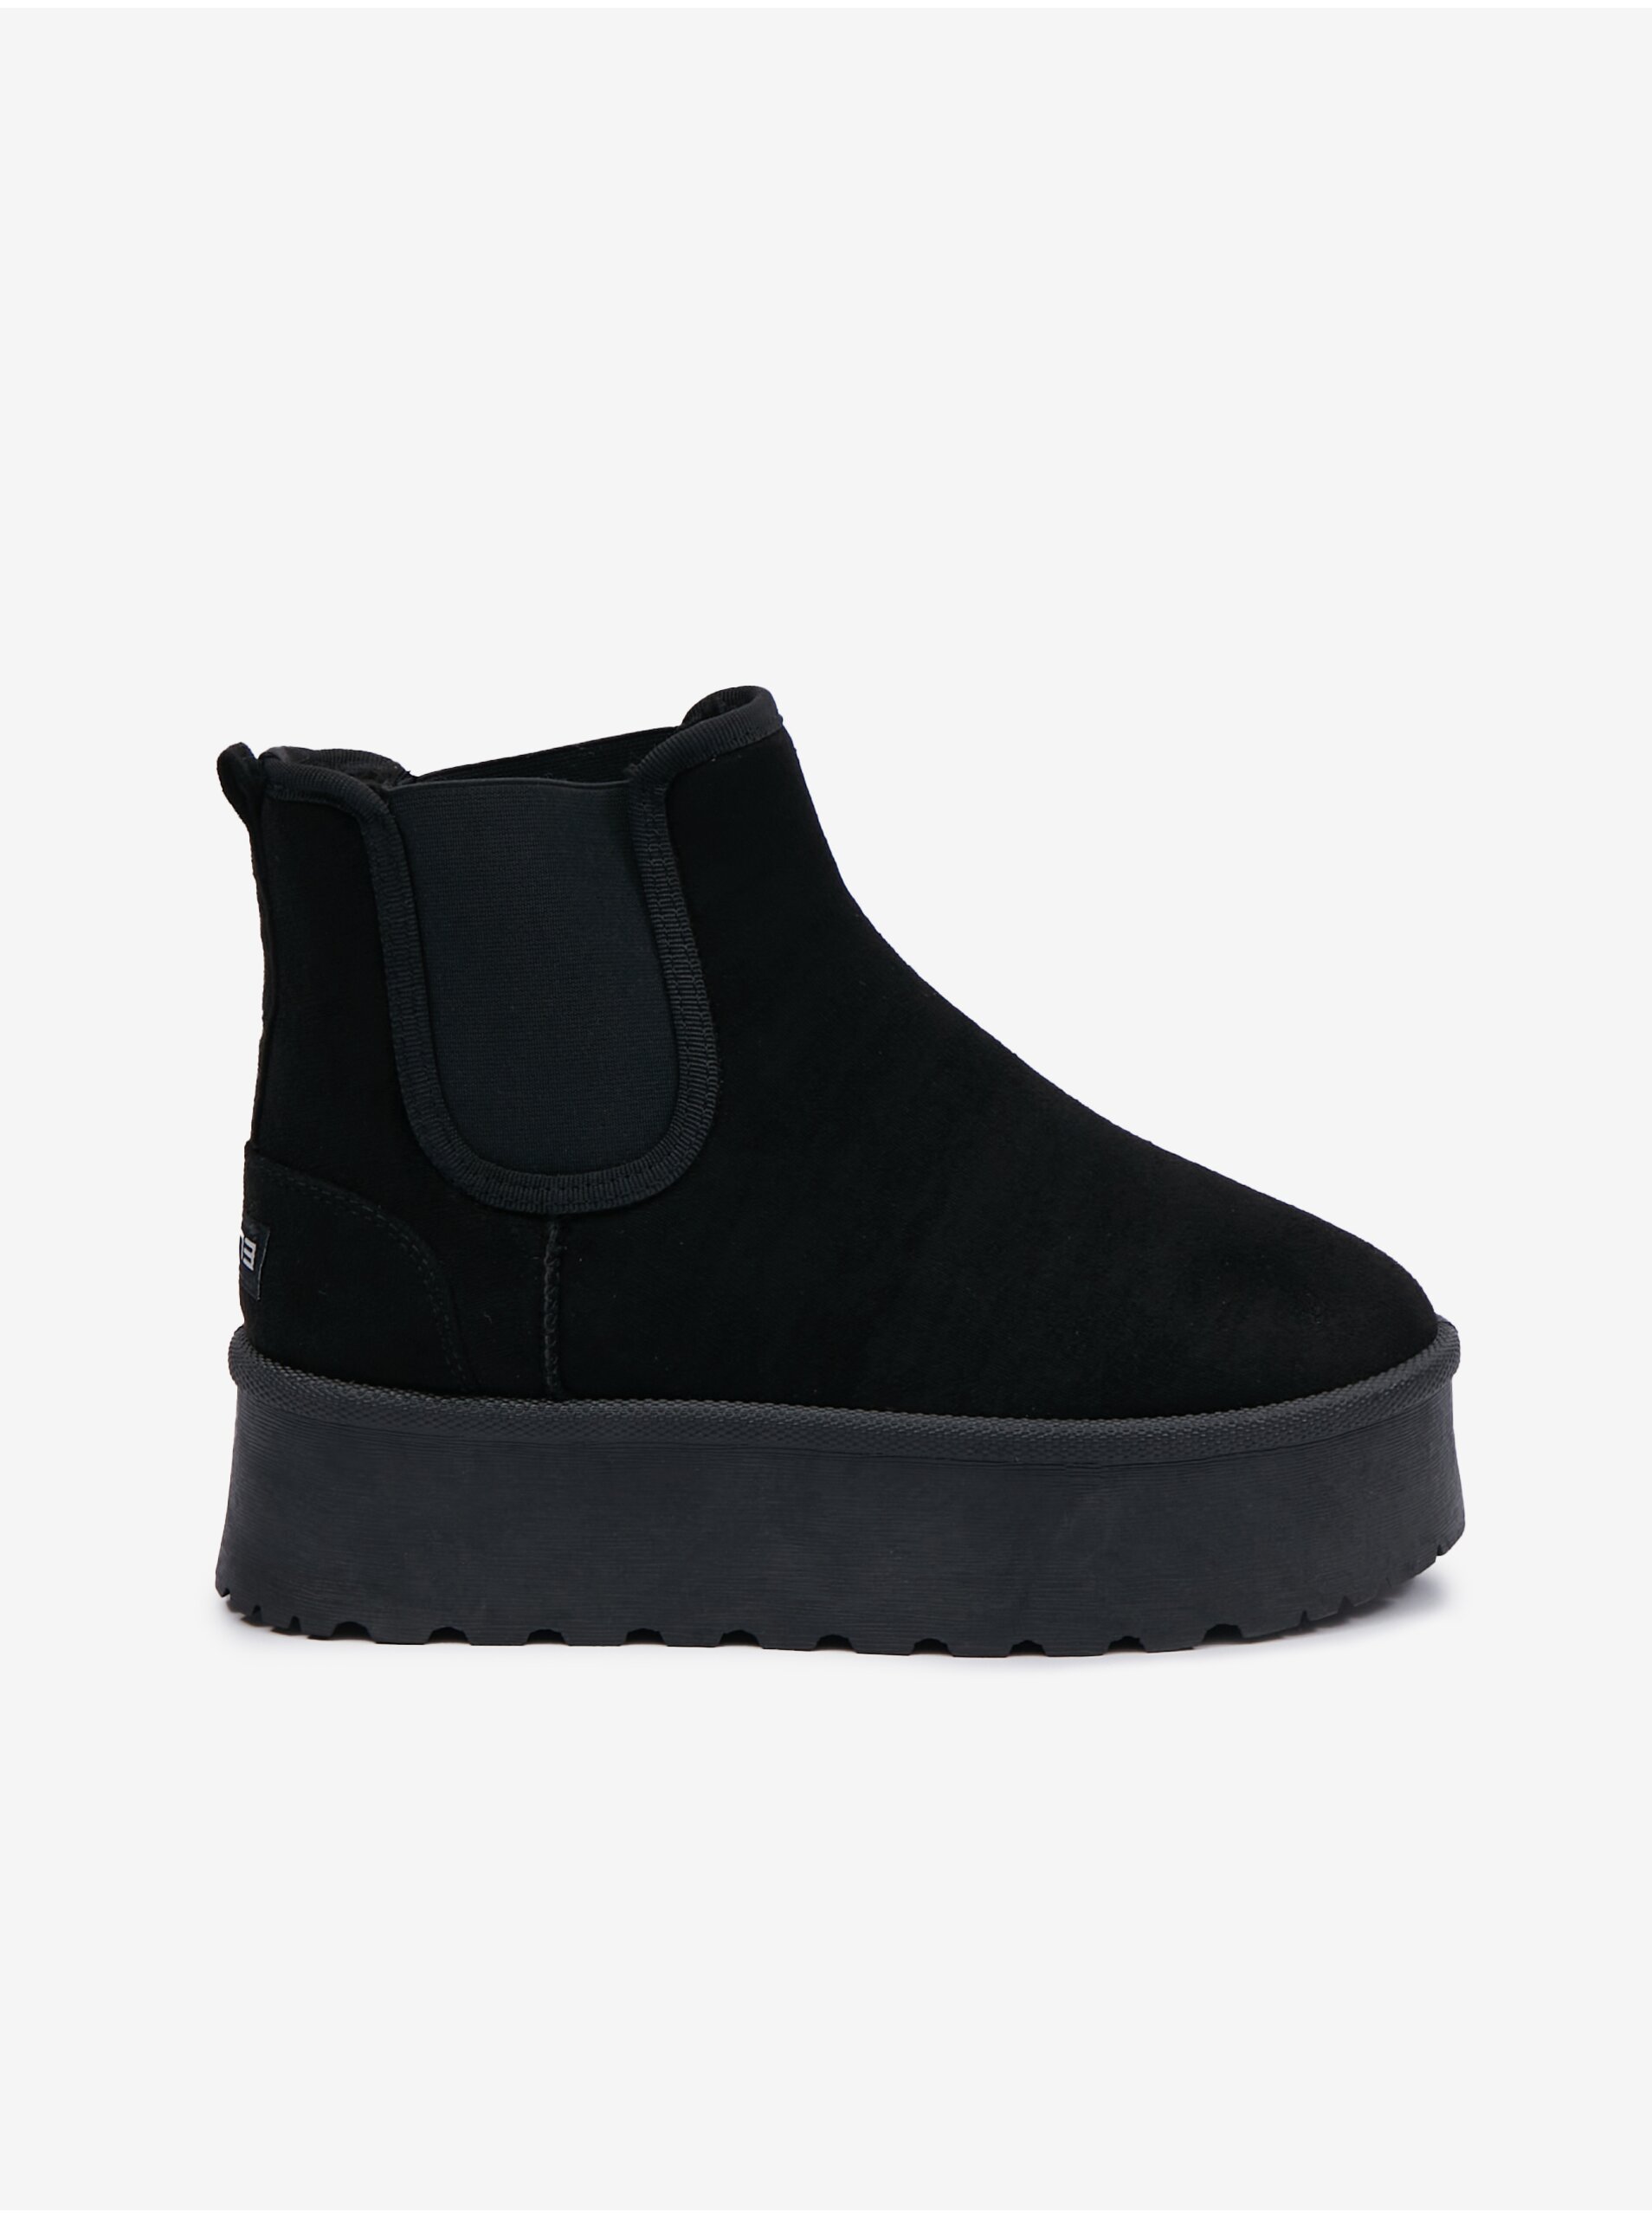 E-shop Černé dámské zimní kotníkové boty SAM 73 Cassiopeia